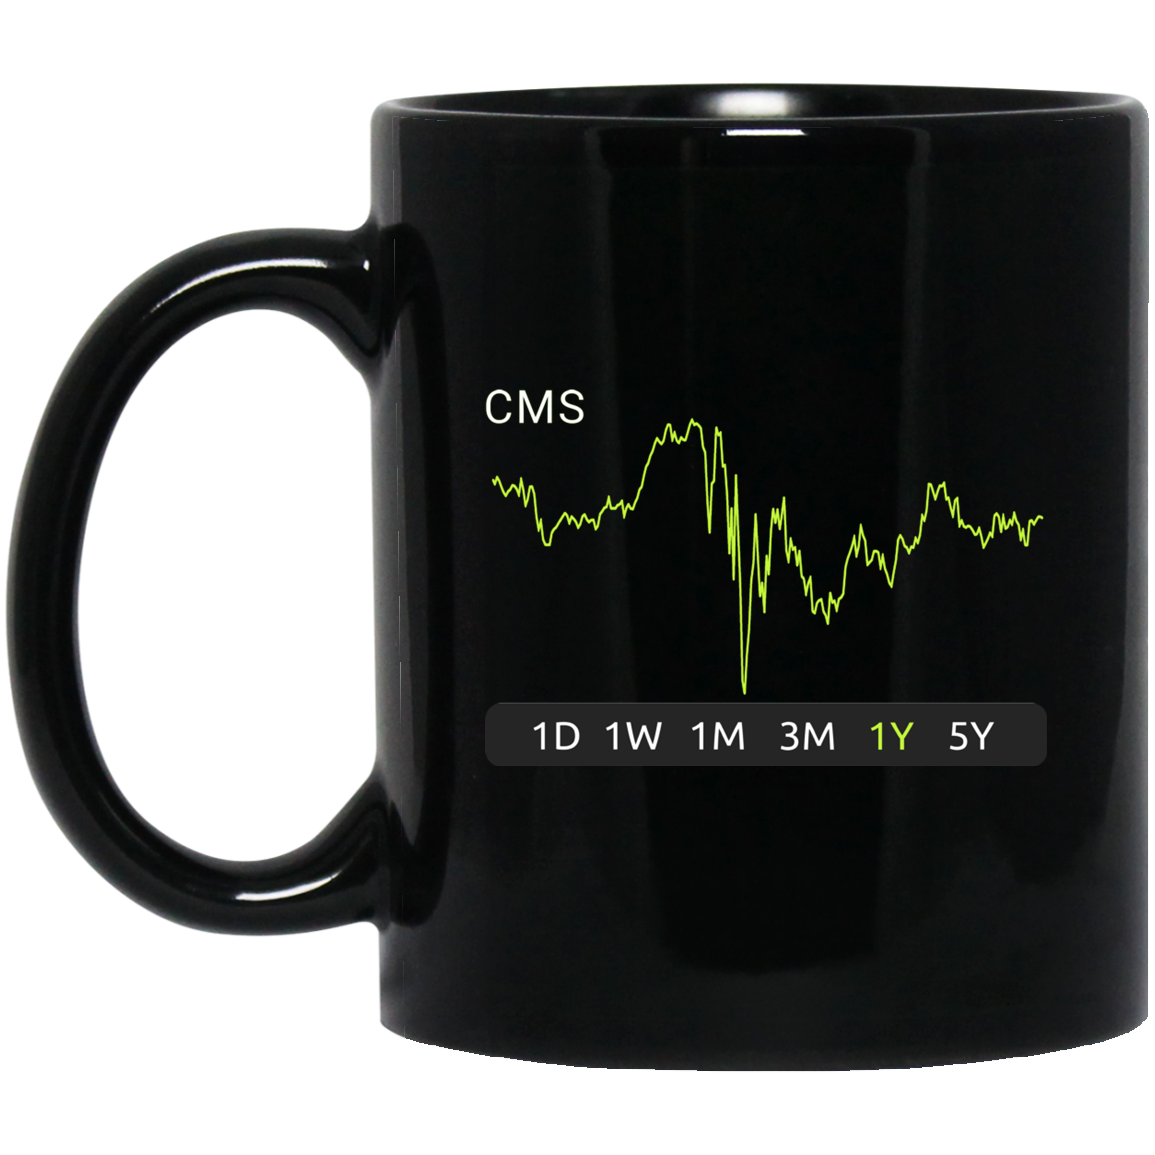 CMS Stock 1y Mug